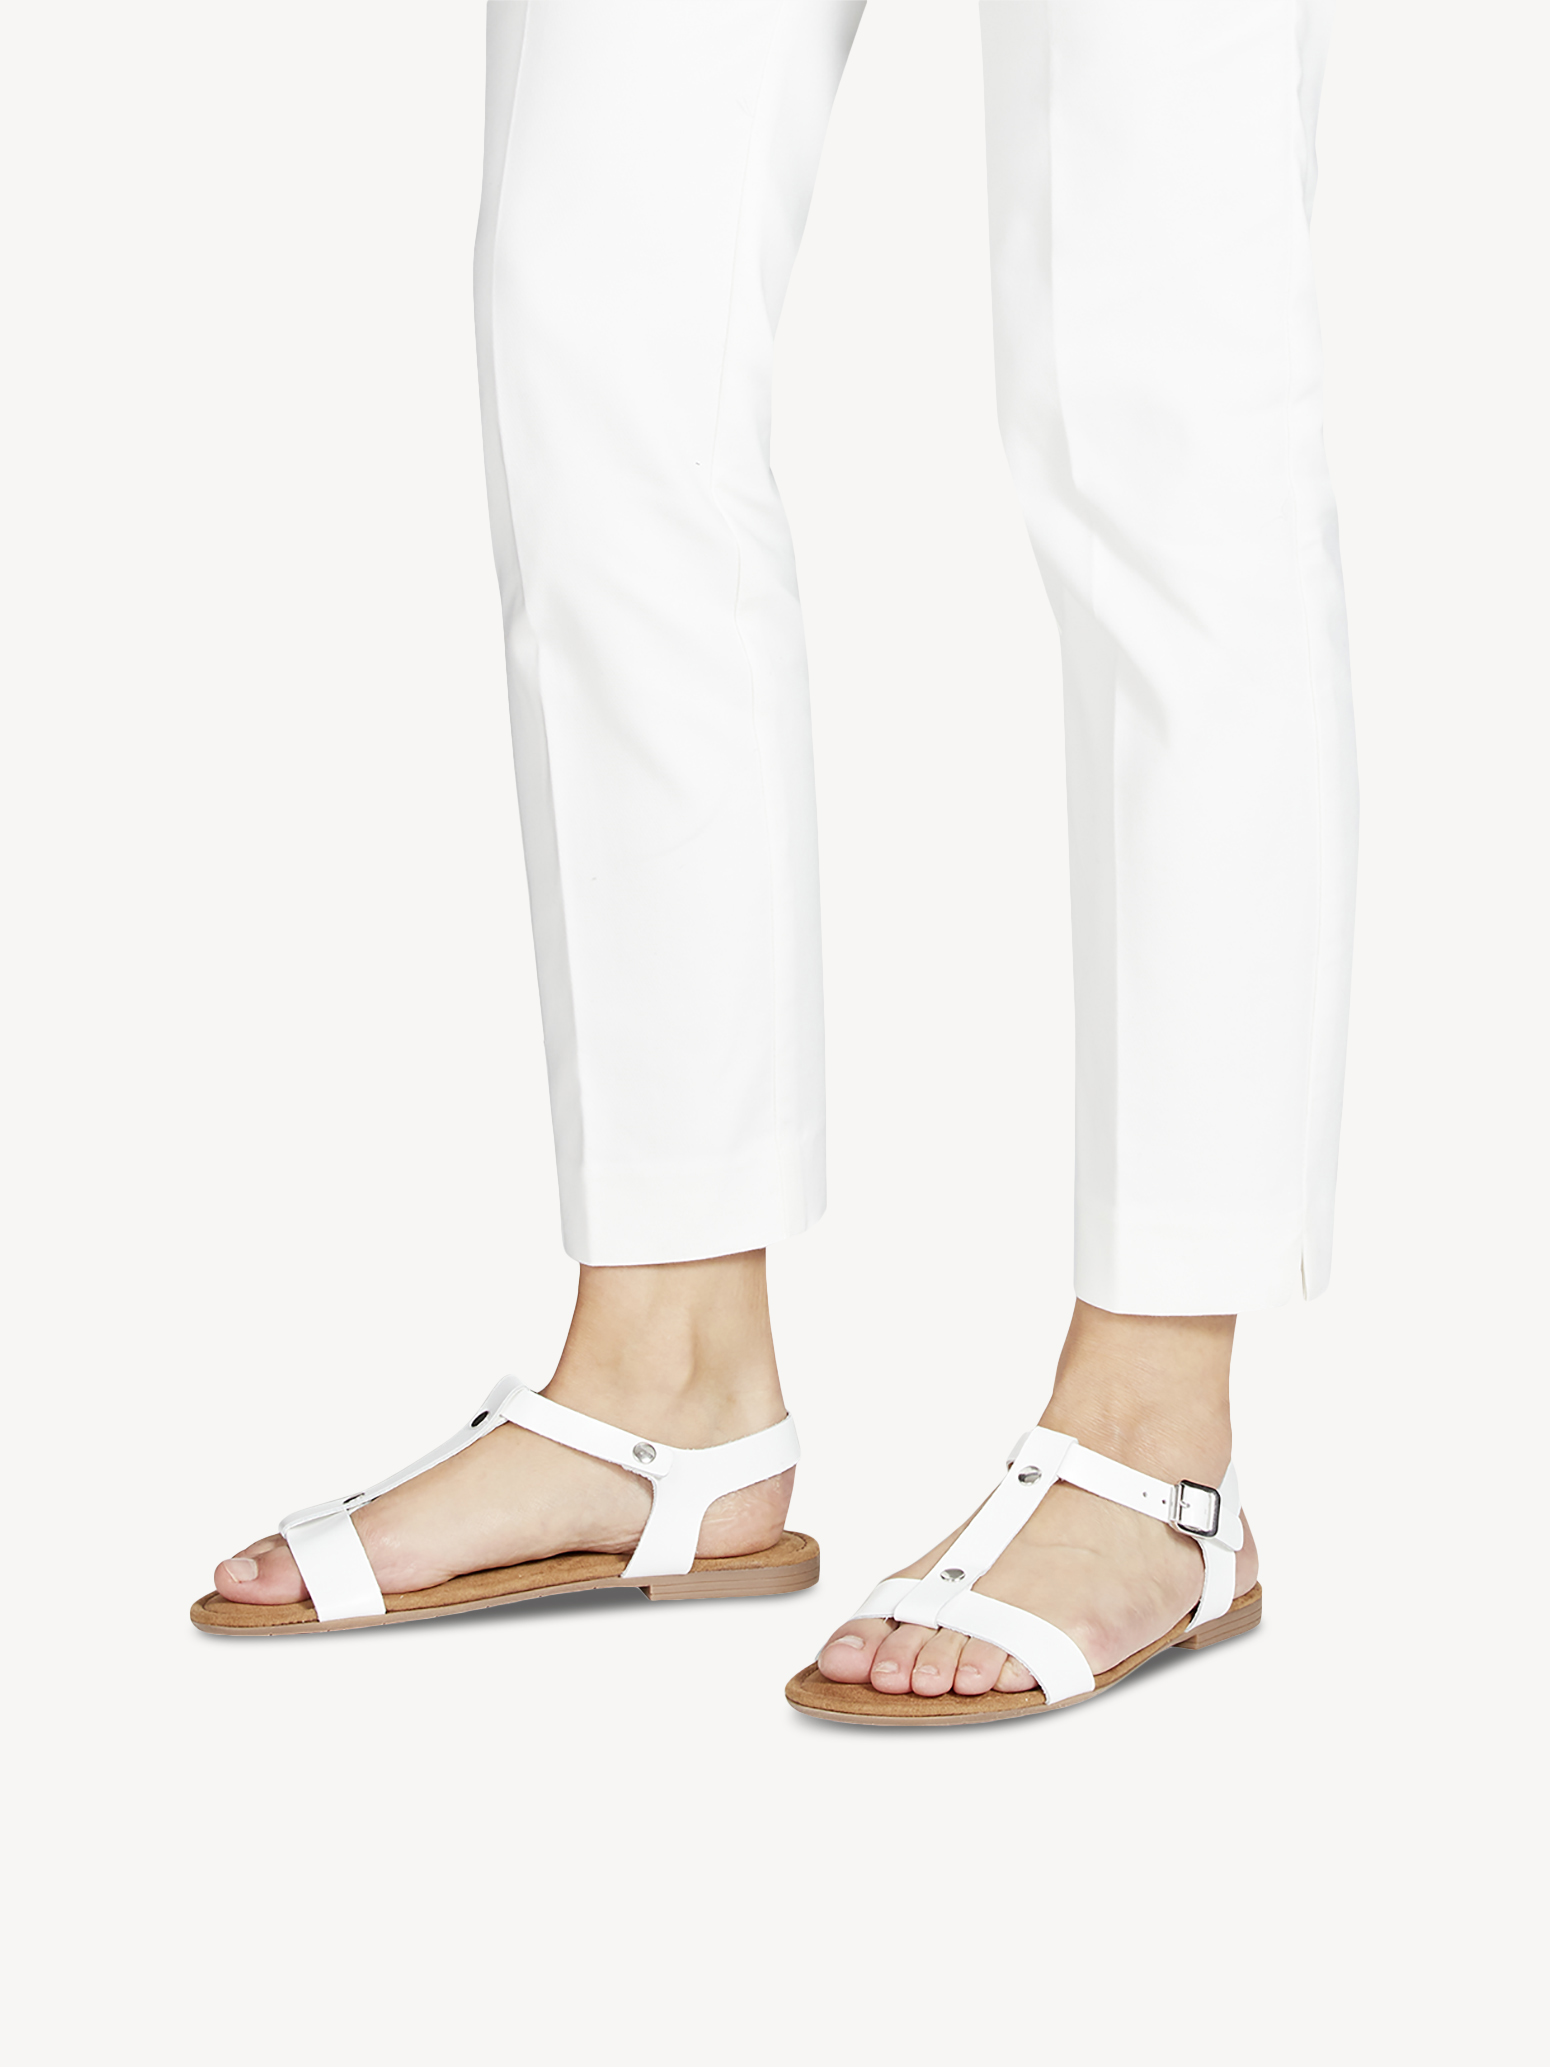 Туфли летние открытые жен. (белый) - изображение №1